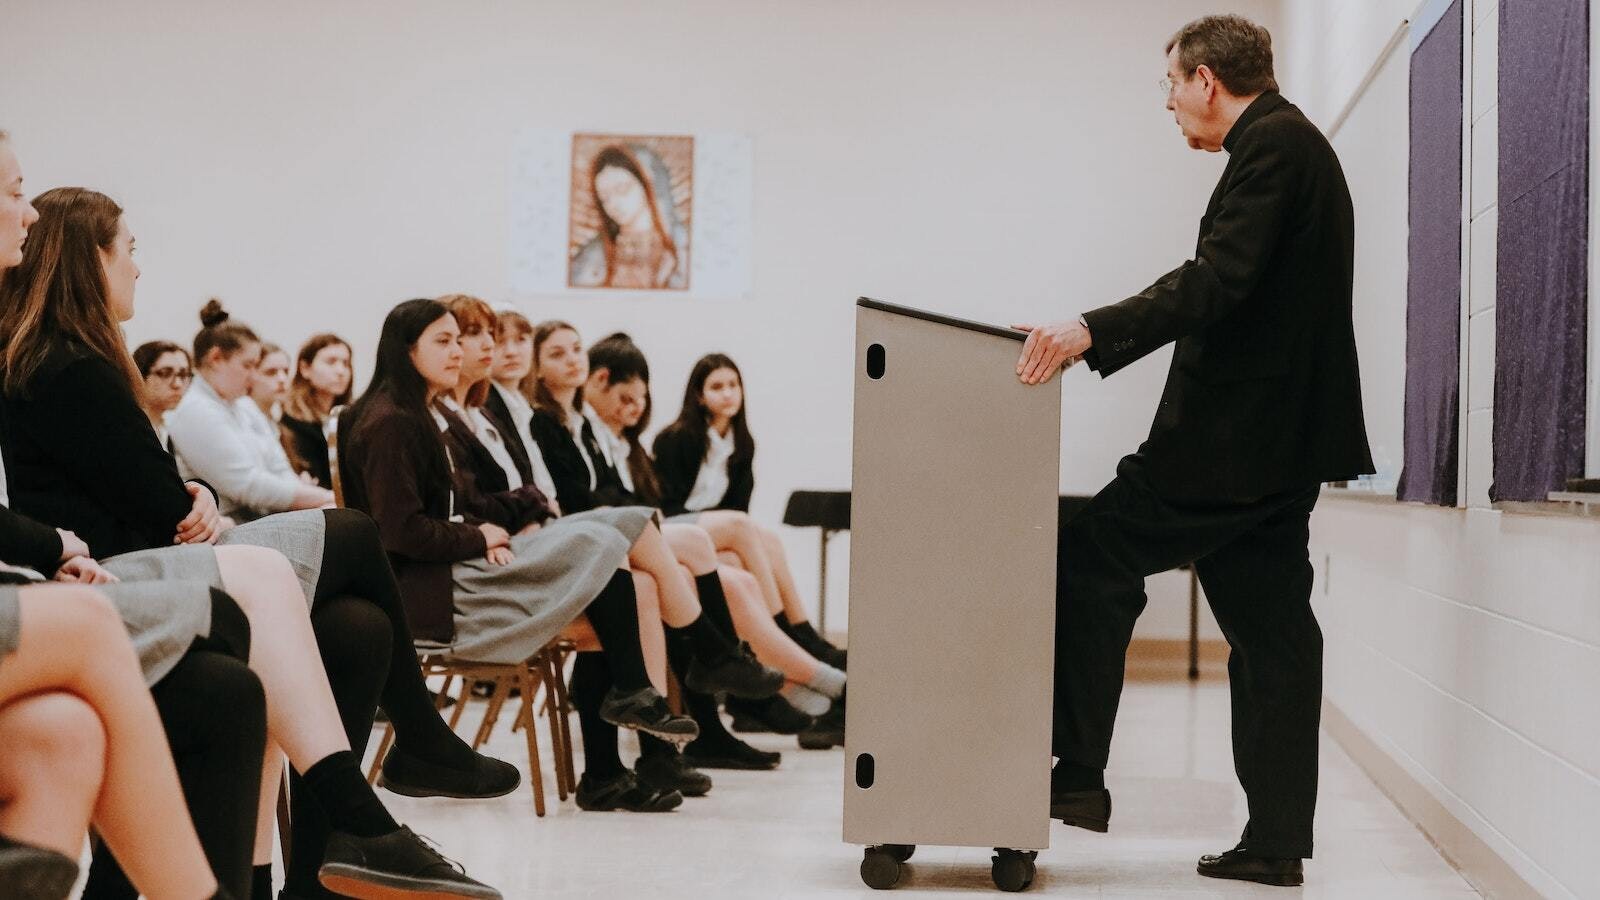 El Arzobispo Vigneron conversa con estudiantes de la St. Catherine of Siena High School en Wixom durante una visita a la escuela el 2 de abril de 2019. (Melissa Moon | Foto de archivo de Detroit Catholic)